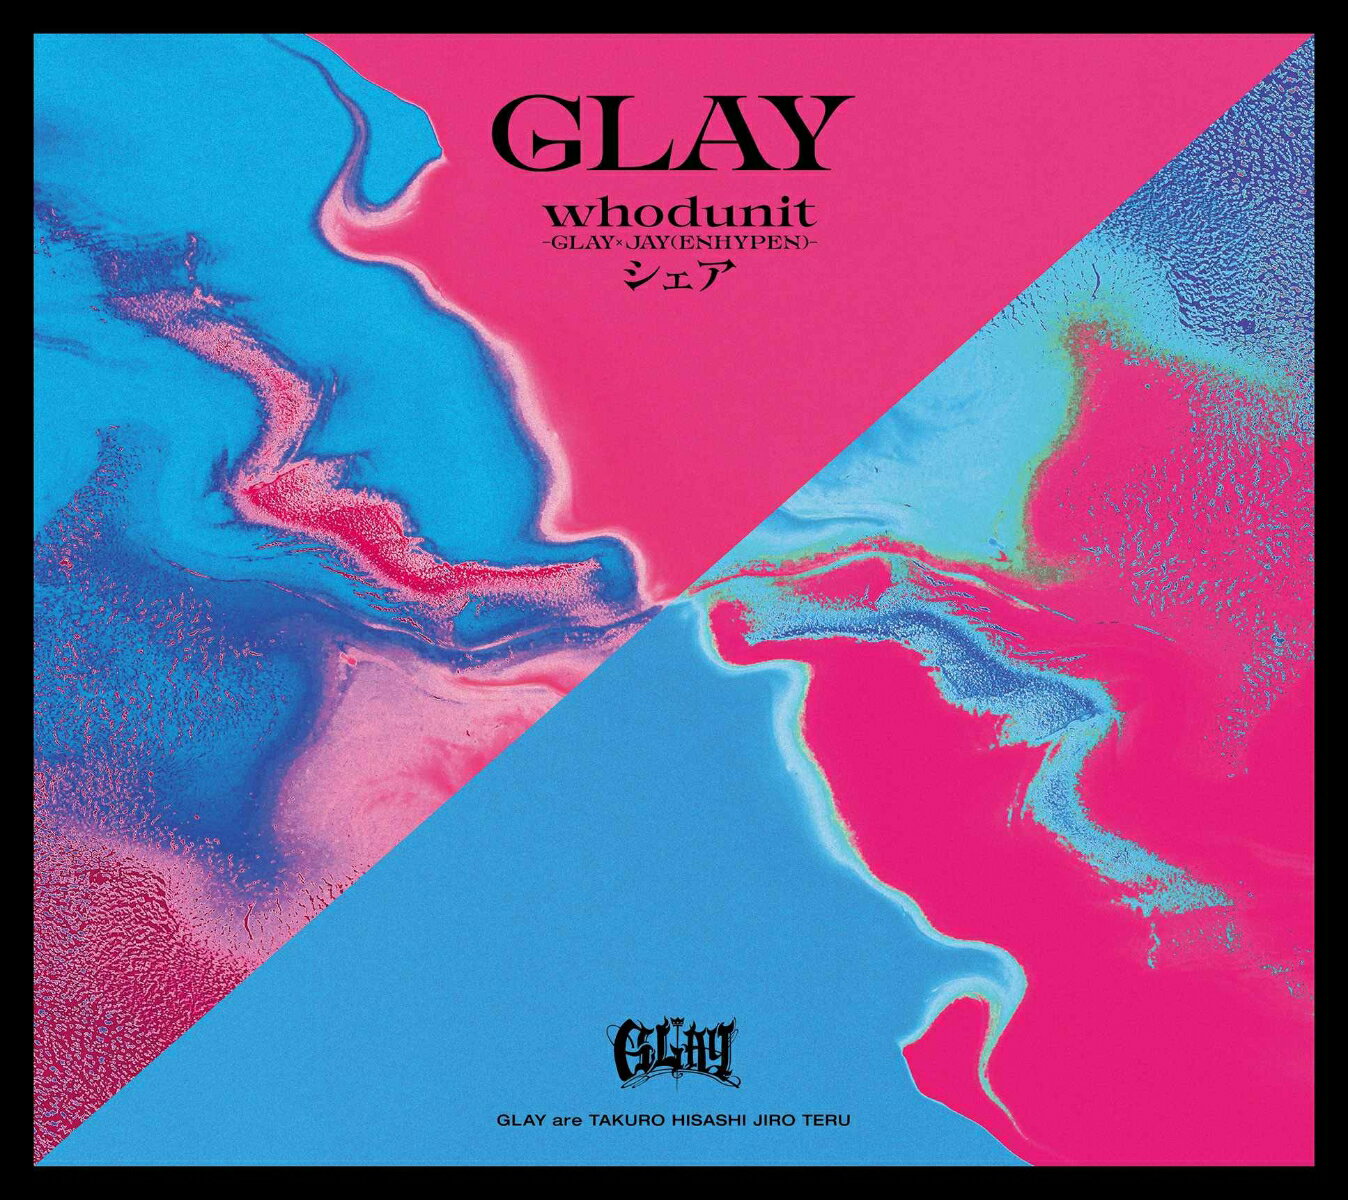 【楽天ブックス限定先着特典】【クレジットカード決済限定】whodunit-GLAY × JAY(ENHYPEN)- /シェア【CD Only】(缶バッジスクエア型(57mm))